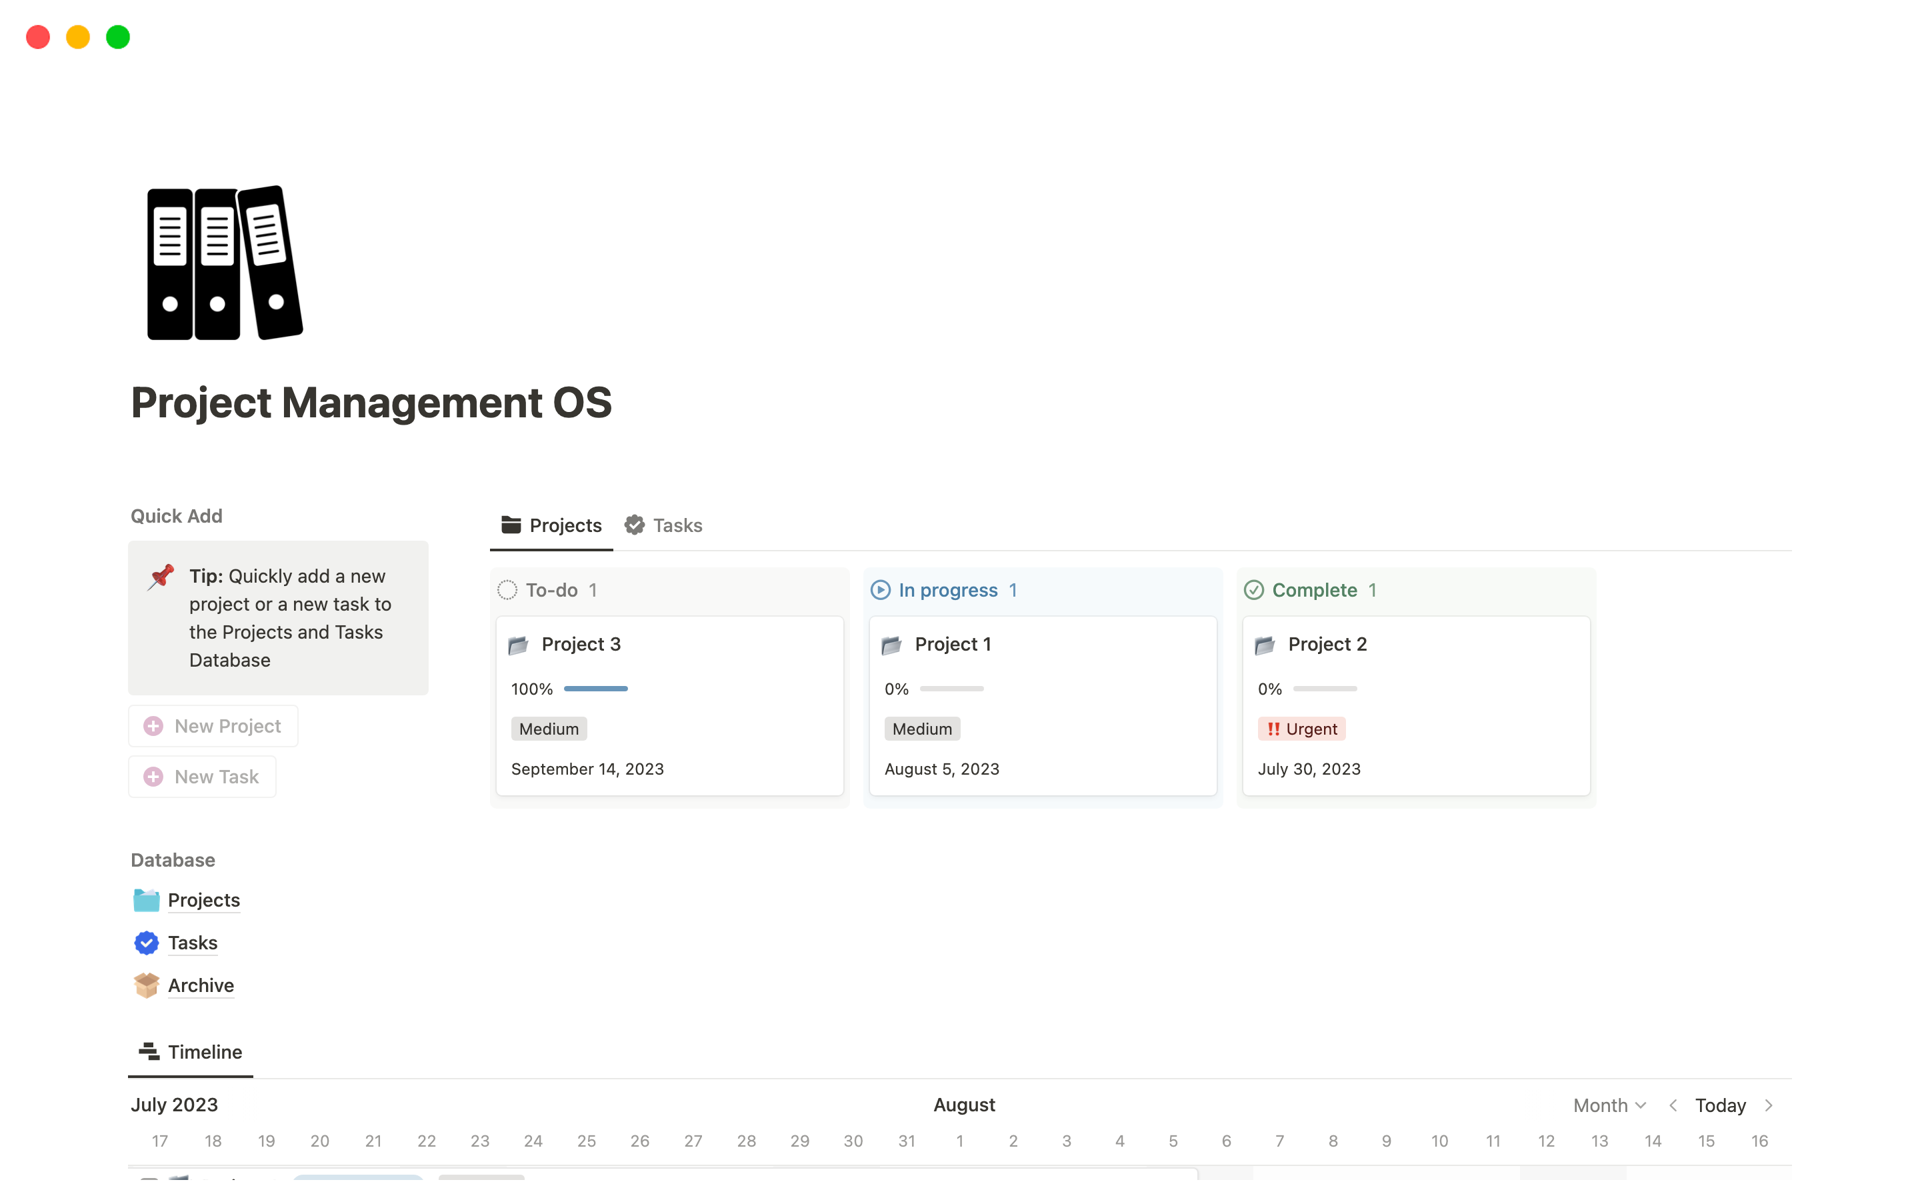 Aperçu du modèle de Project Management OS